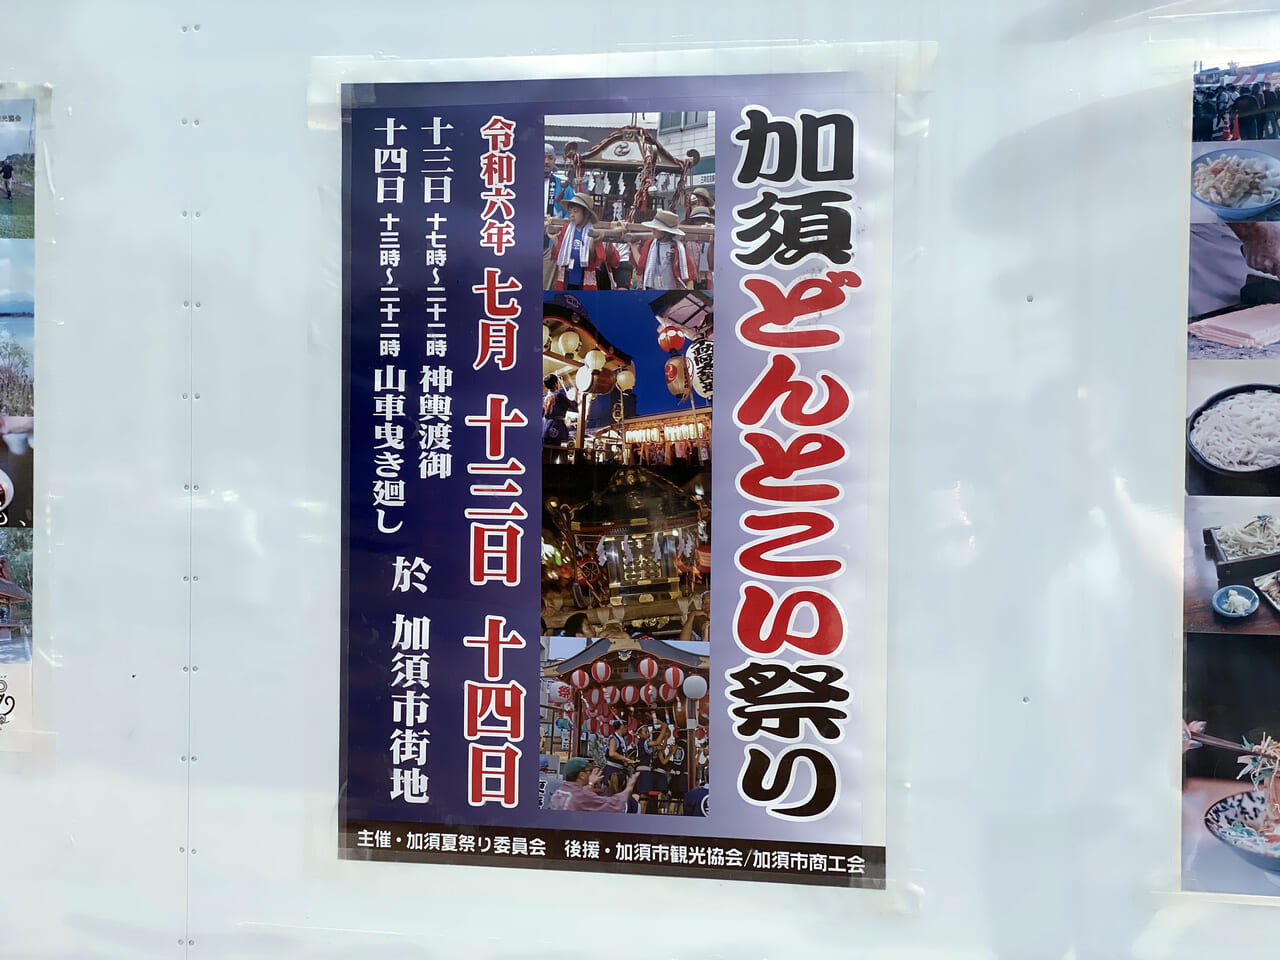 加須どんとこい祭りのポスター